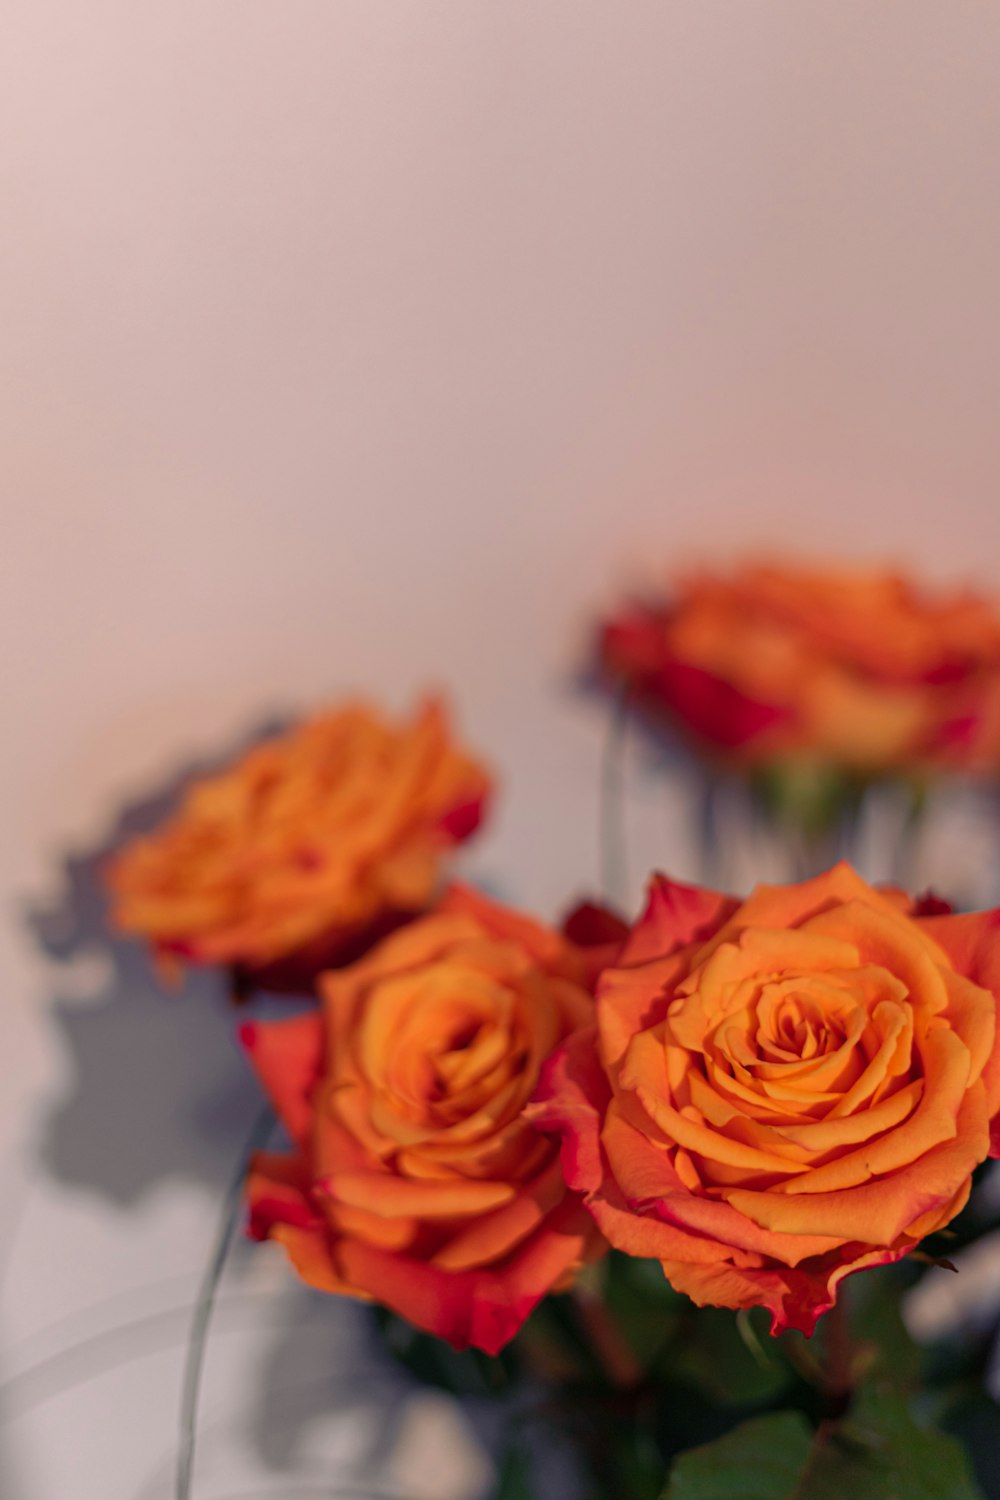 テーブルの上にオレンジ色のバラでいっぱいの花瓶